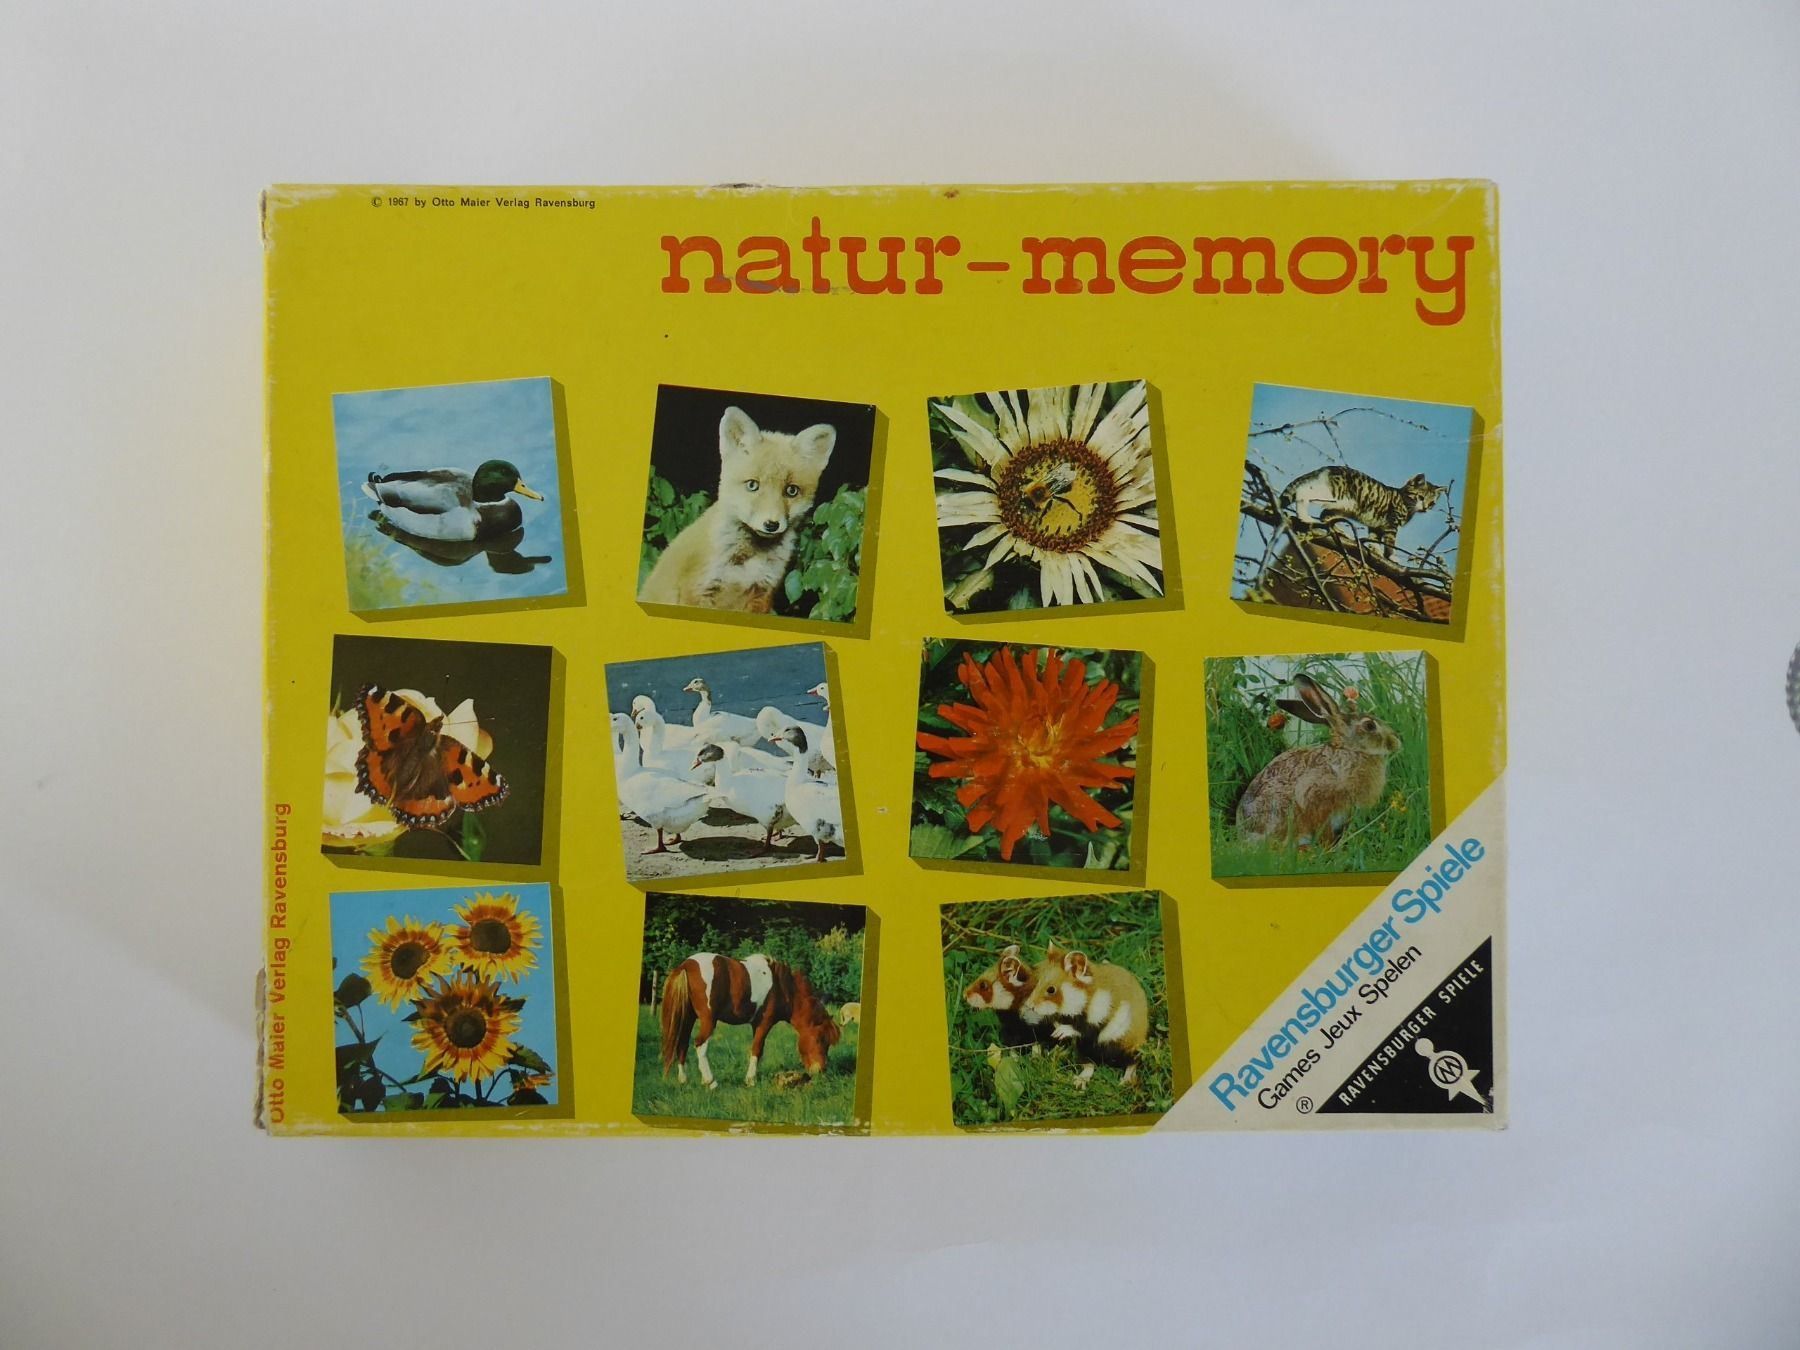 Natur Memory